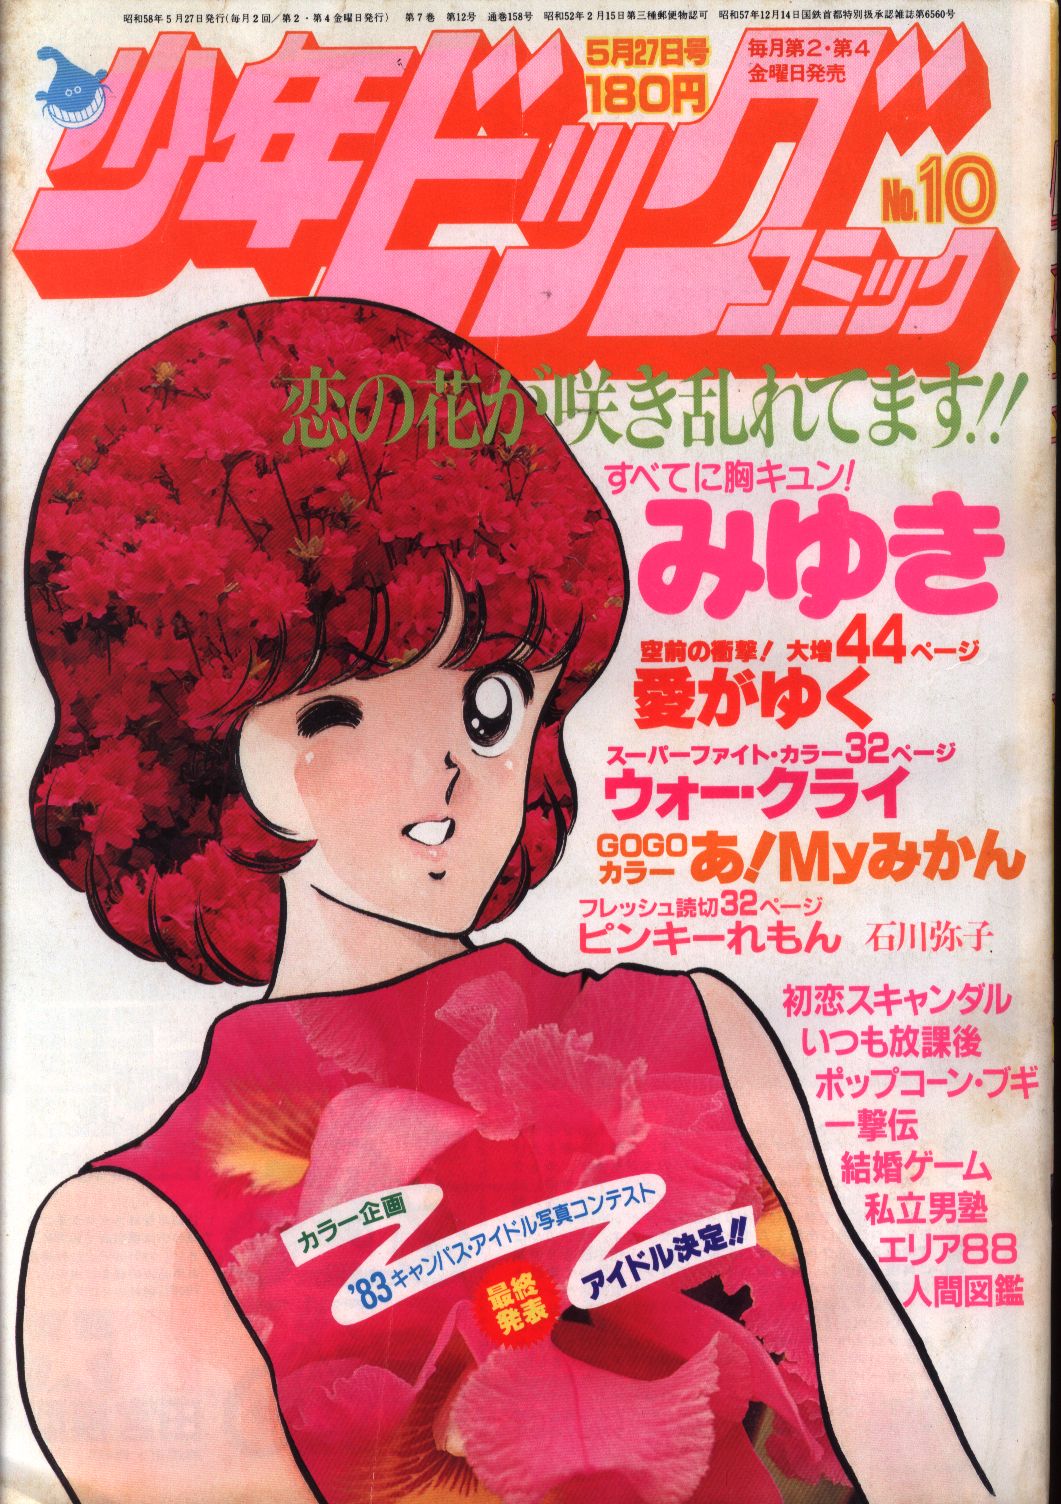 少年ビックコミック 1983年(昭和58年) 10